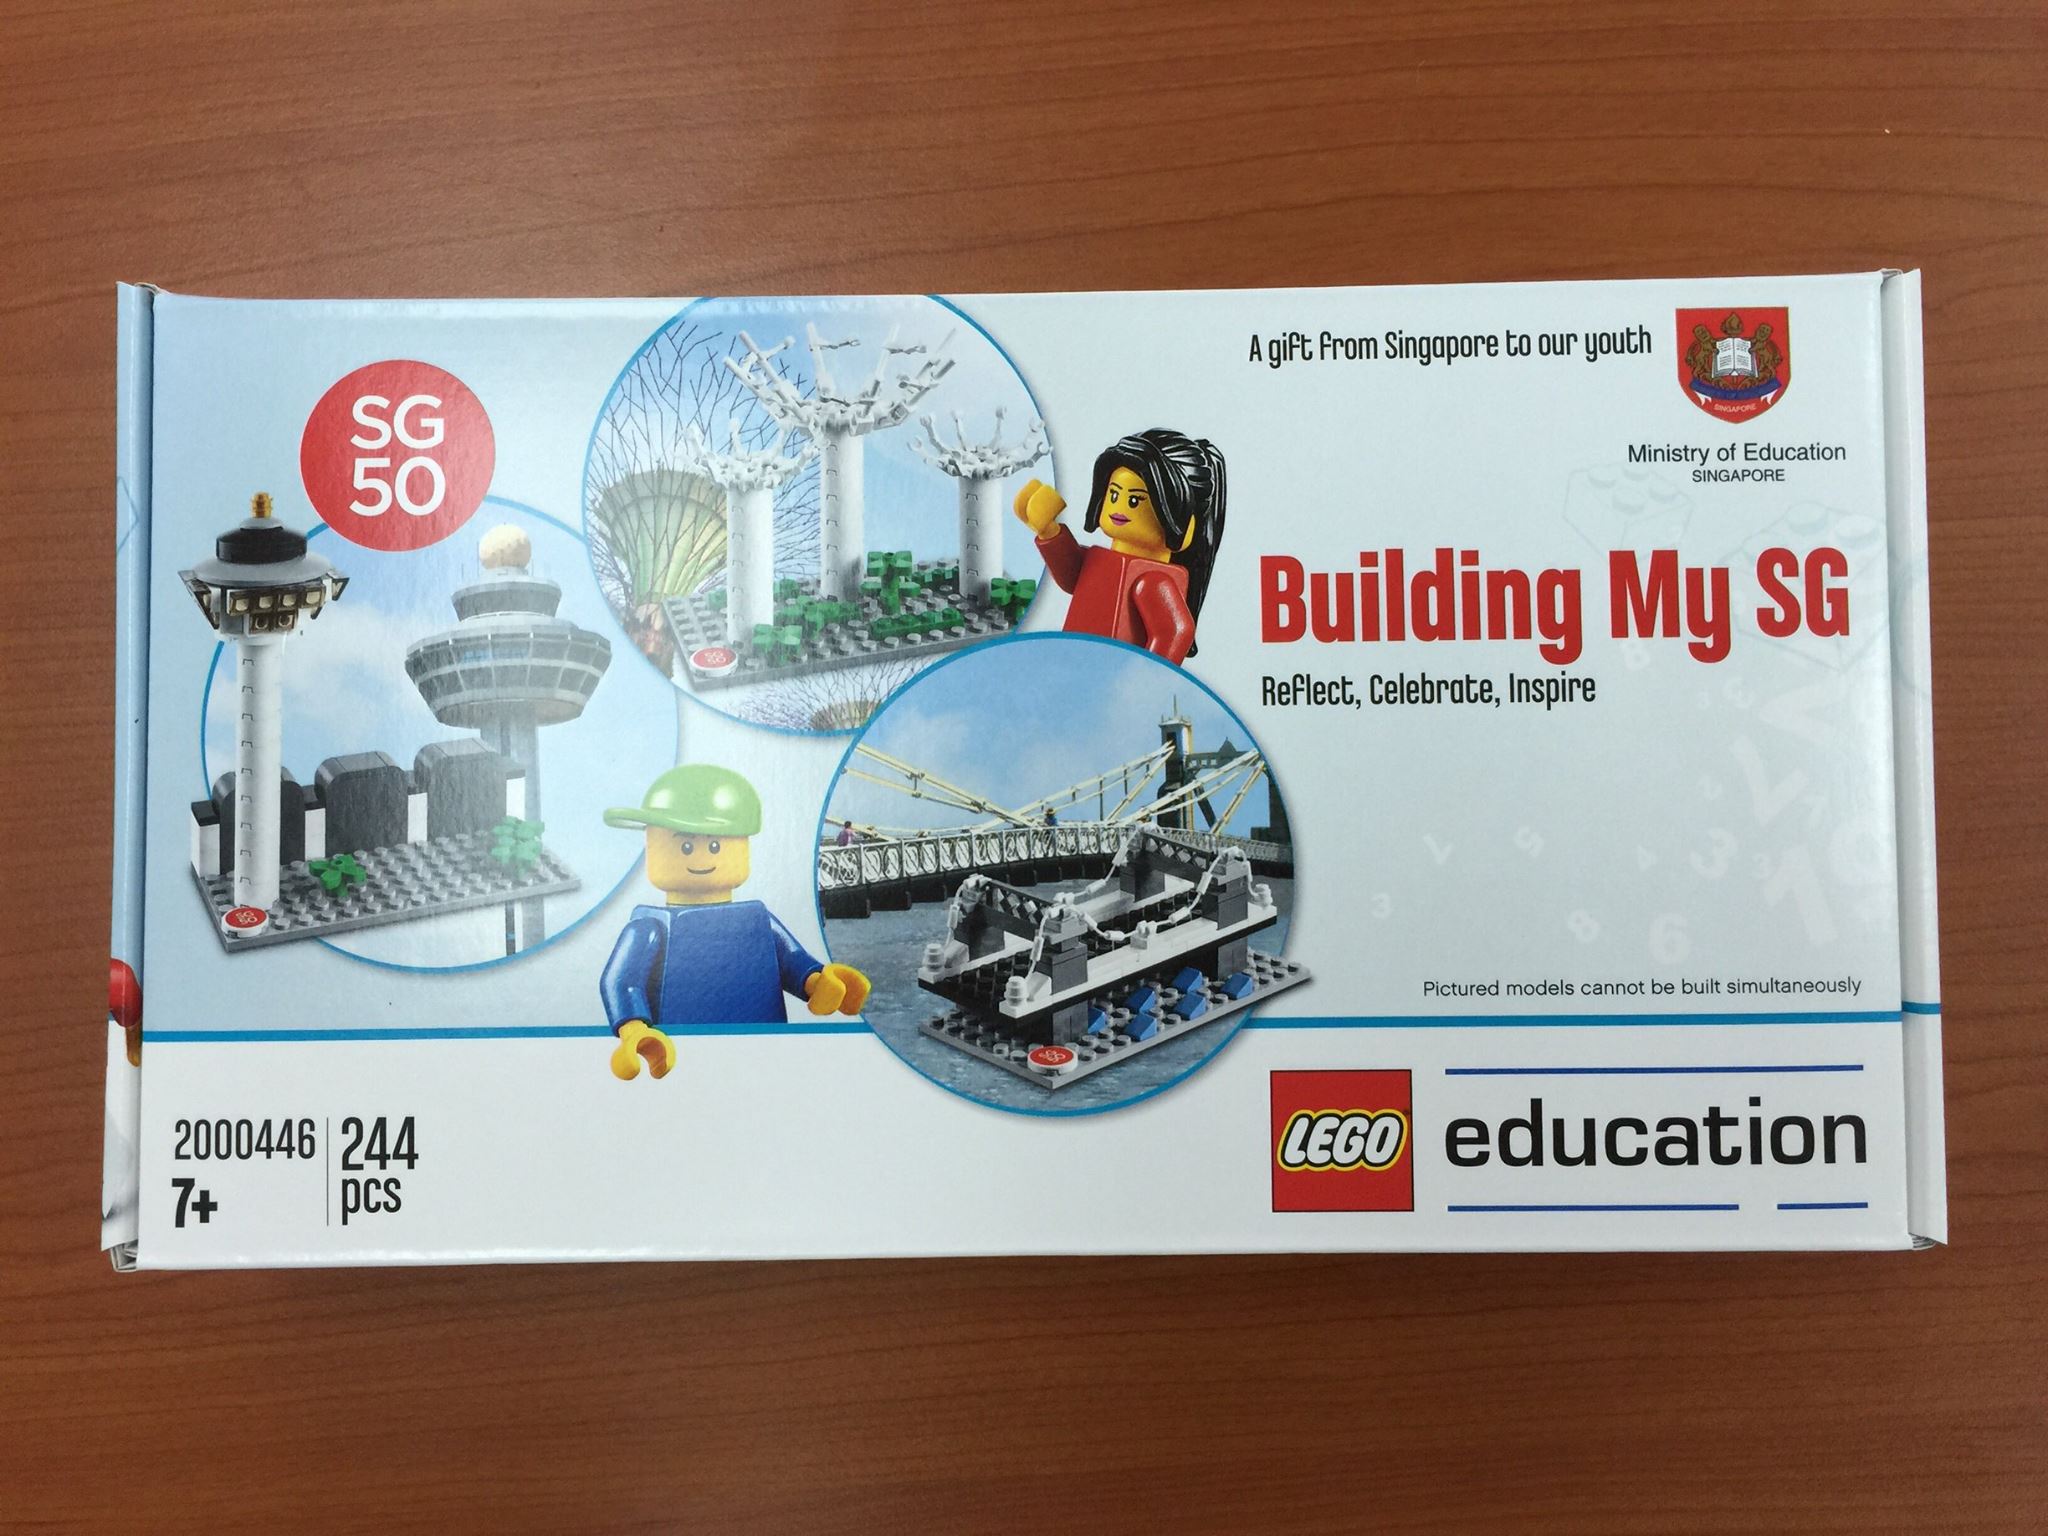 SG50 Lego set Singapore 2